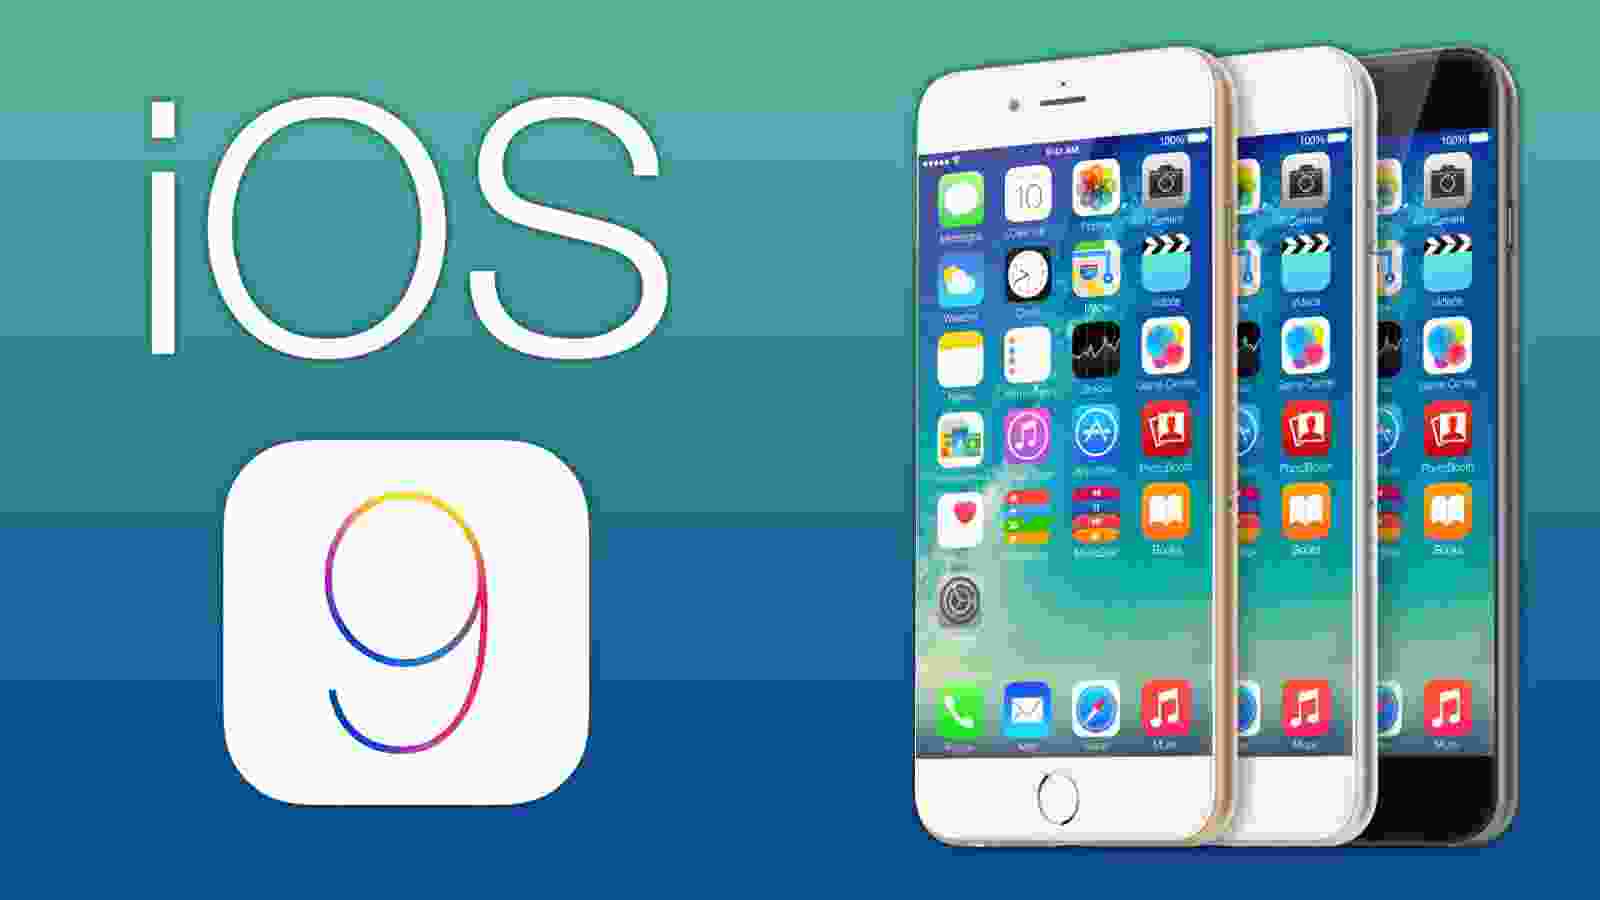 Chỉnh sửa hình ảnh Mail iOS 9:
Chỉnh sửa hình ảnh Mail iOS 9 giúp bạn tạo ra những thư tín độc đáo và ấn tượng. Với hàng trăm hiệu ứng và công cụ chỉnh sửa, bạn sẽ dễ dàng chỉnh sửa hình ảnh để phù hợp với nội dung thư tín của mình. Hãy bấm vào hình ảnh và trải nghiệm ngay hôm nay!